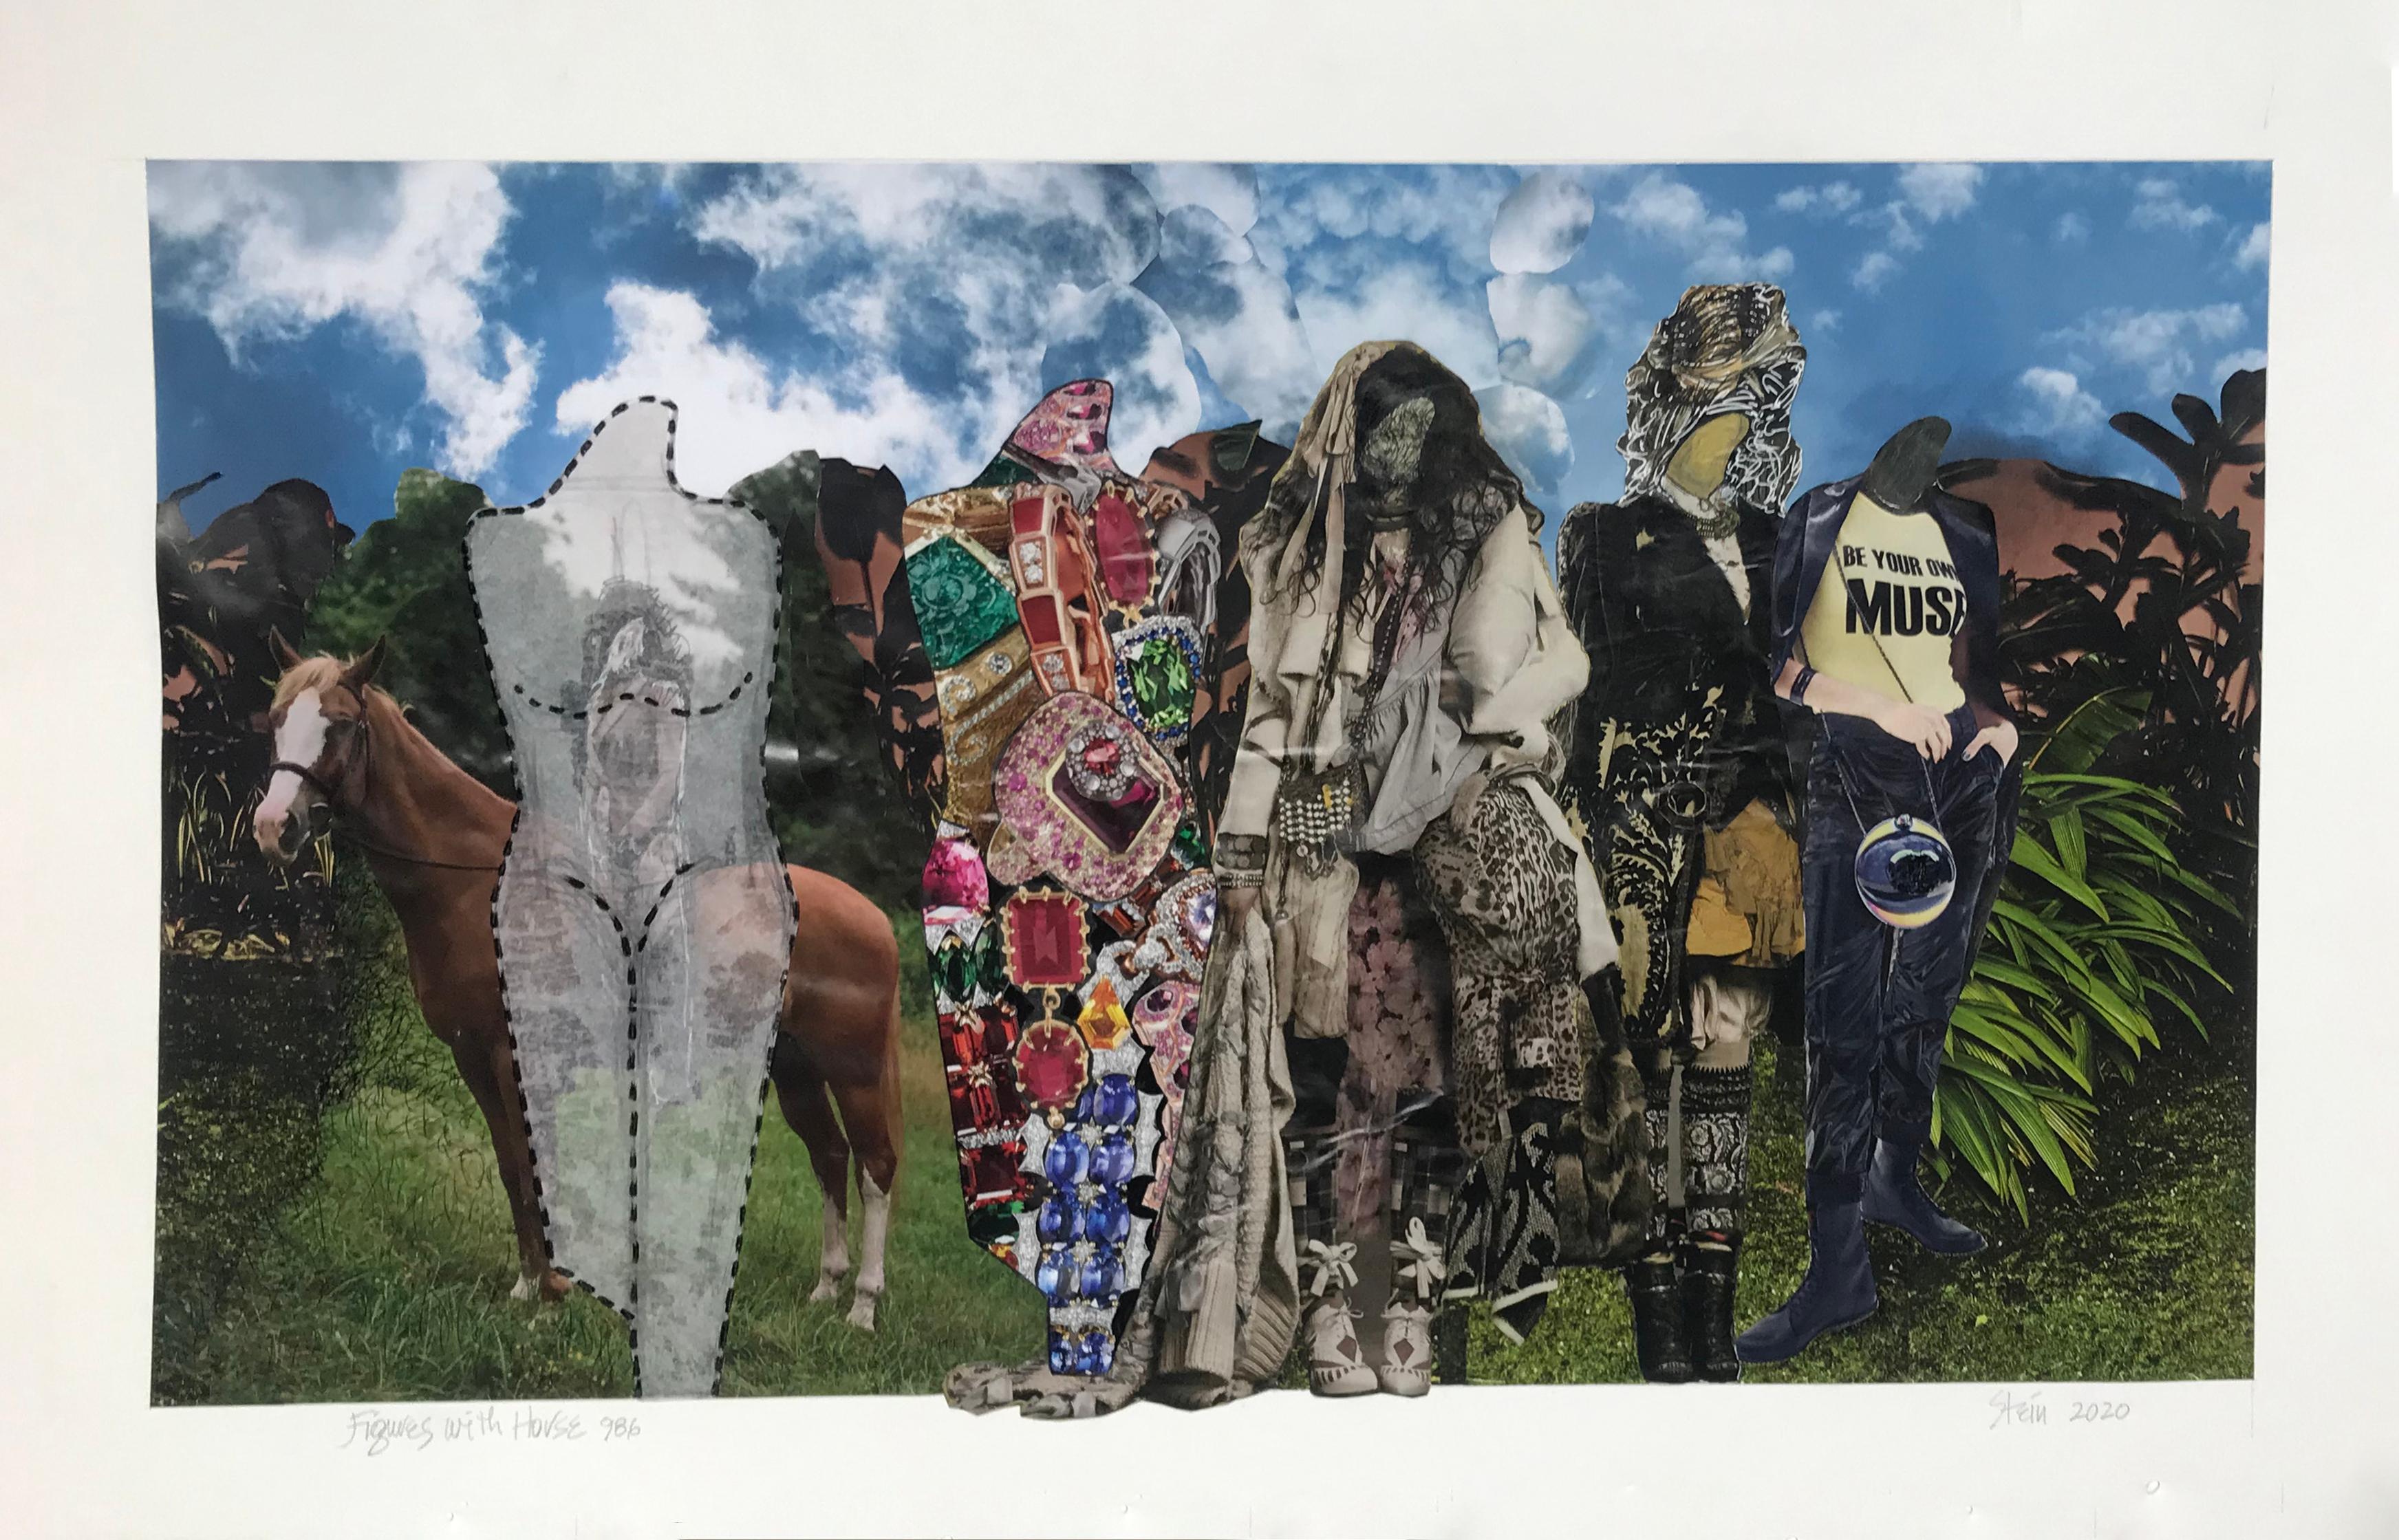 Linda Stein, Figures avec cheval 986 - Collage de dessins d'art contemporain

En 2000,  Linda Stein a commencé une série intitulée Knights of Protection.  Ses chevaliers étaient à la fois des défenseurs au combat et des symboles de pacifisme.  

En